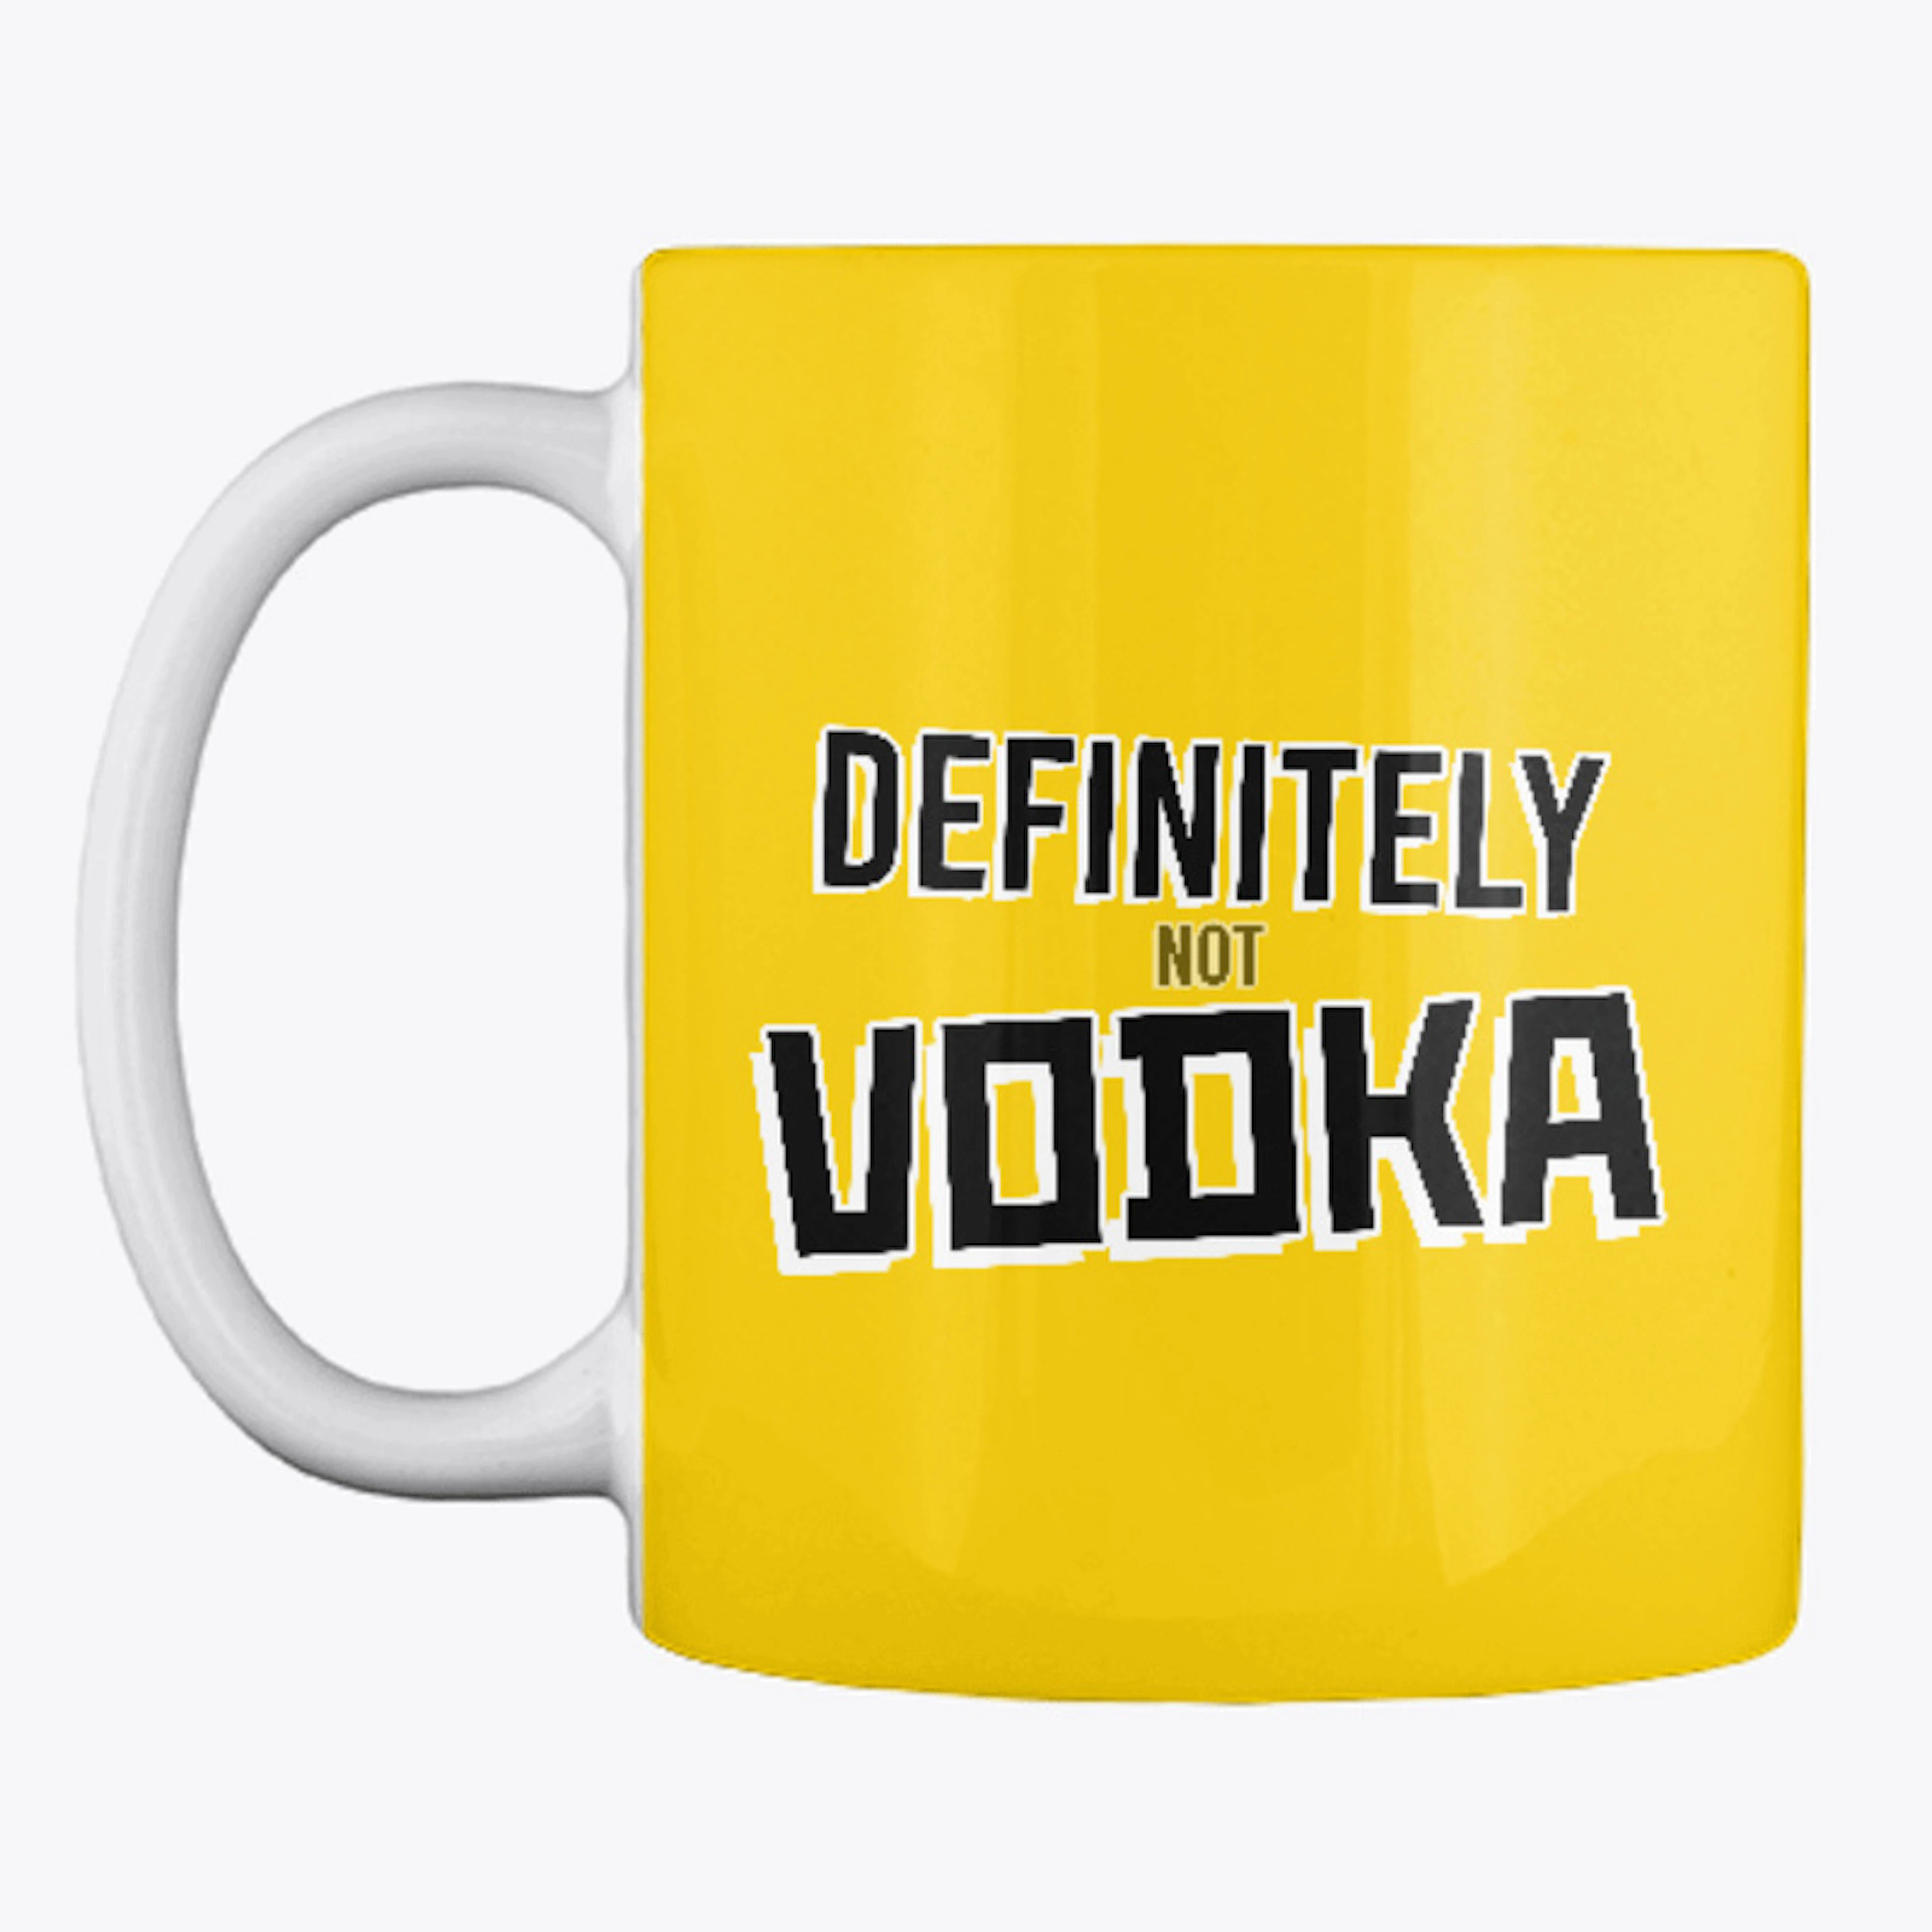 Definitely not Vodka